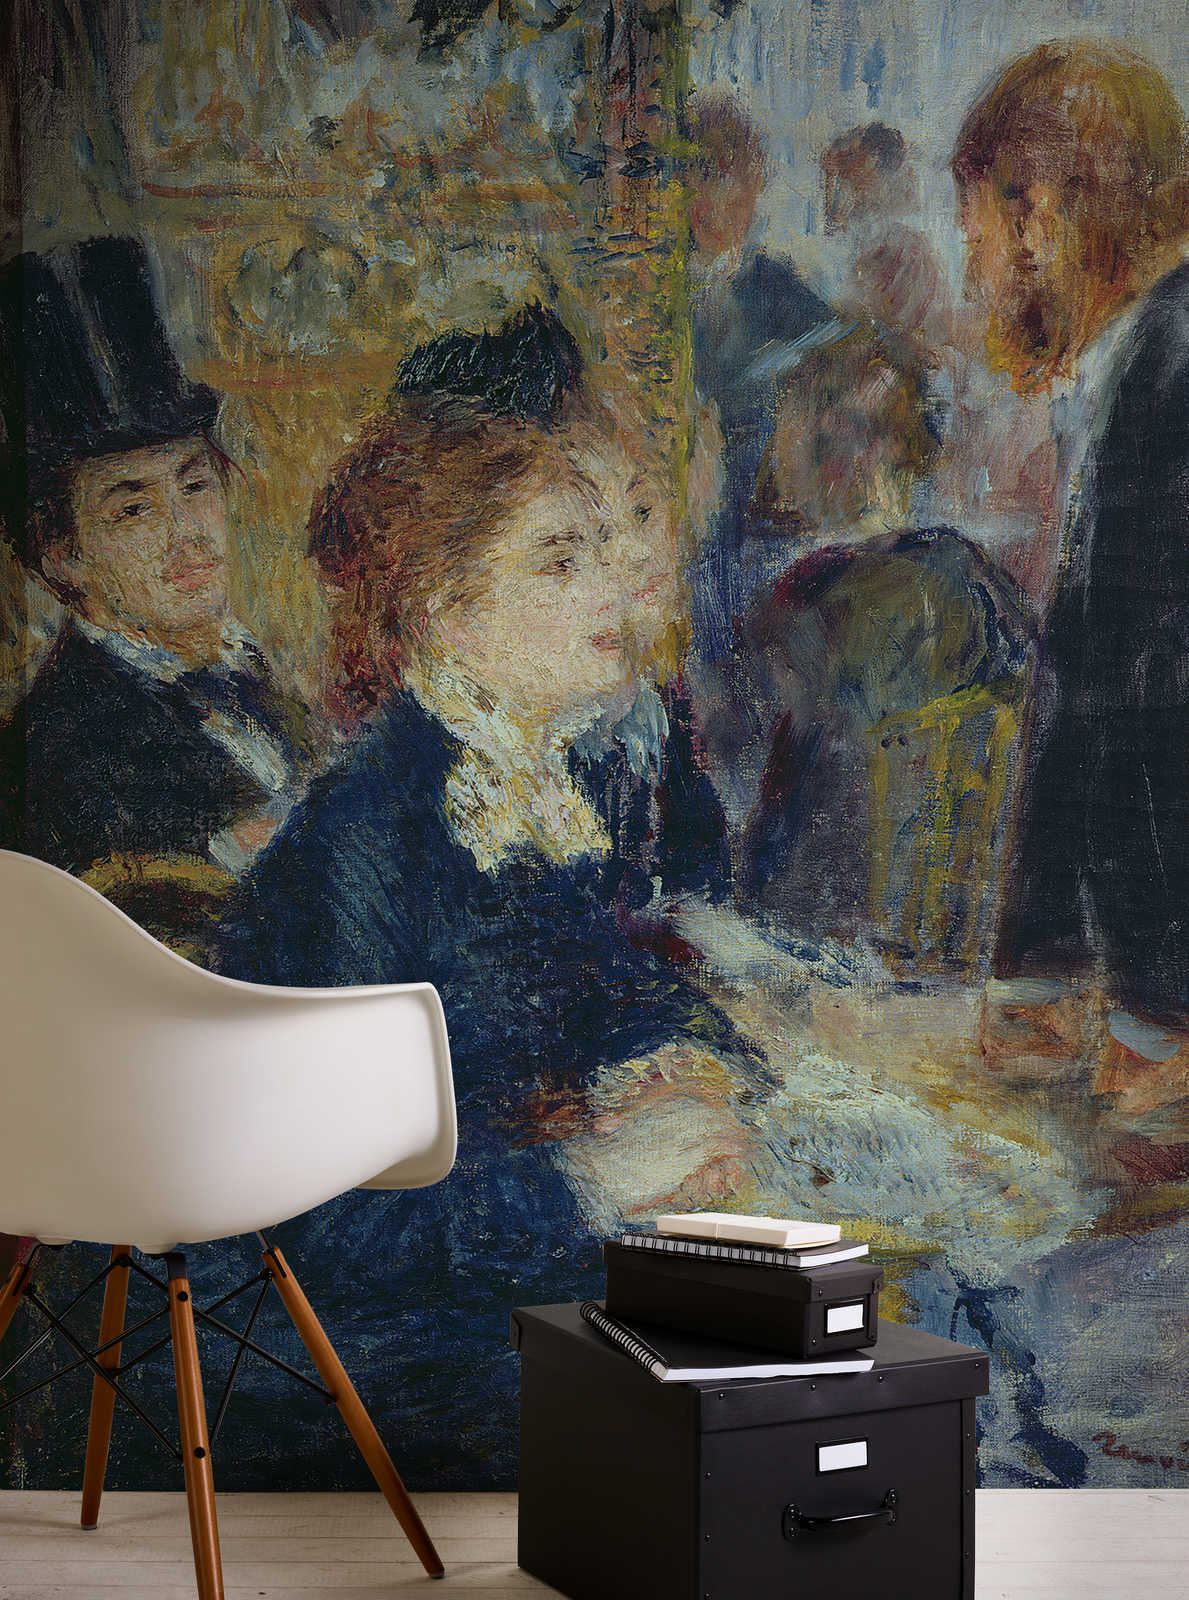             Papel pintado fotográfico "En el café" de Pierre Auguste Renoir
        